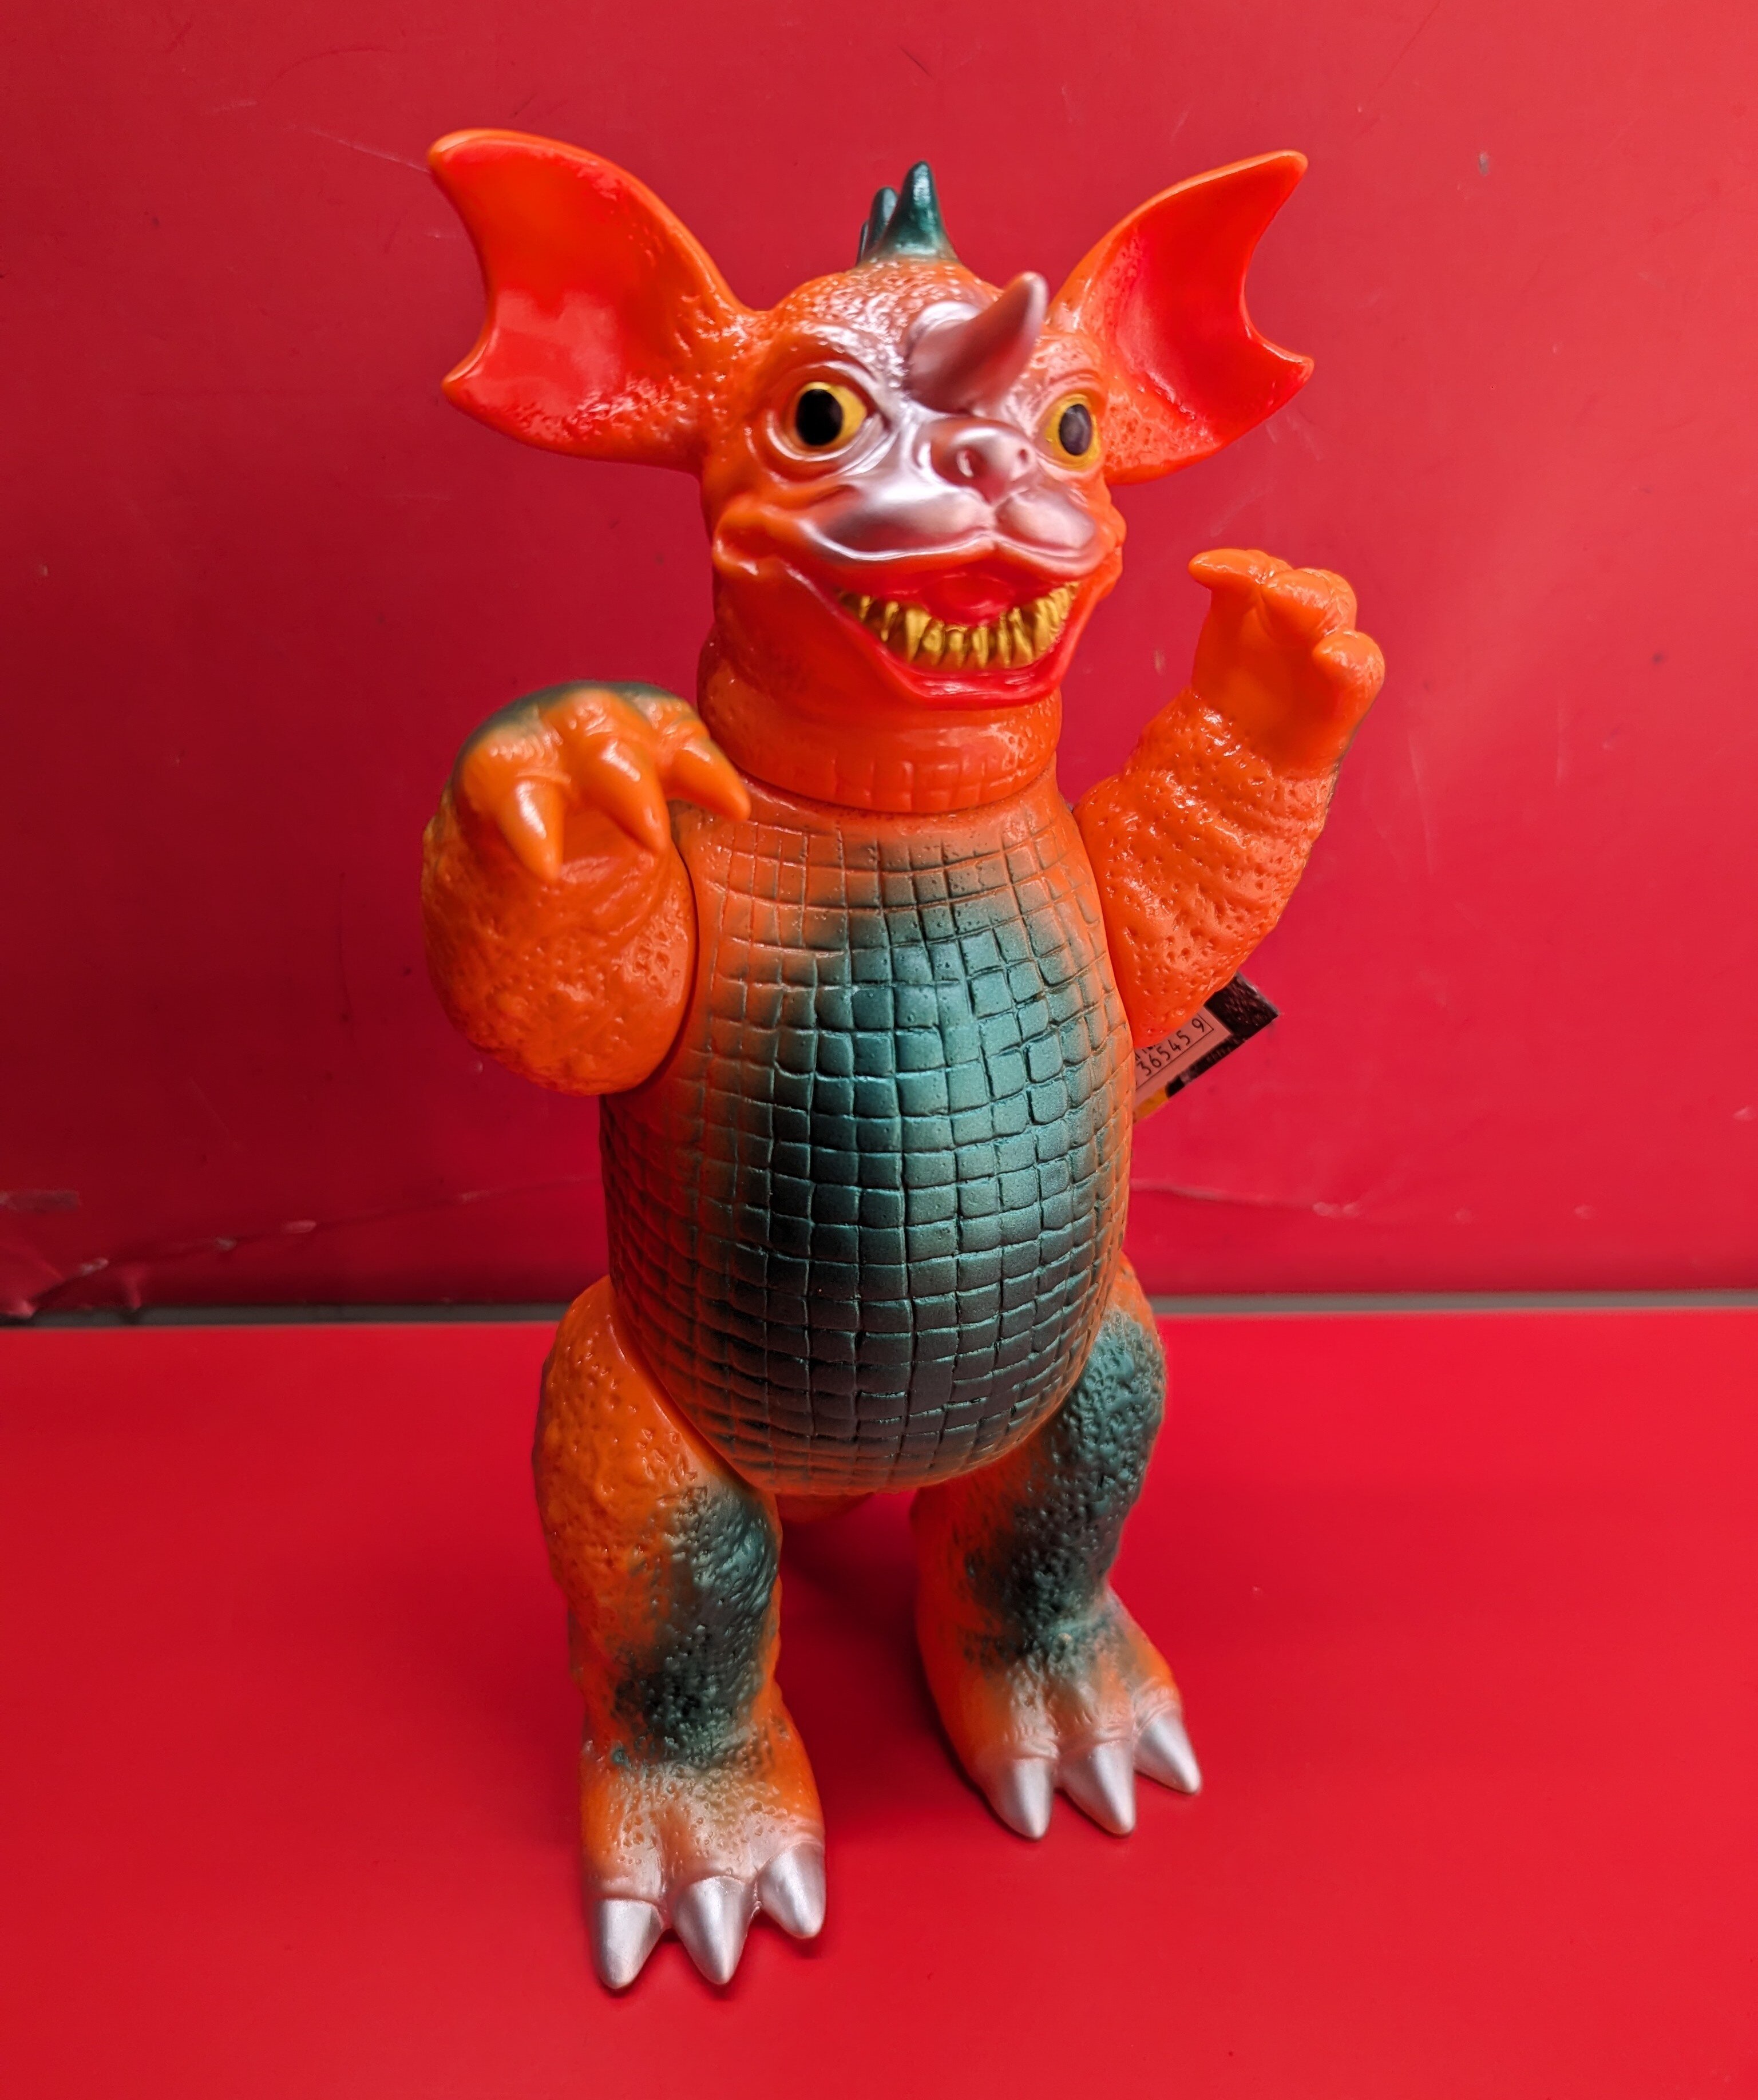 おもちゃ/ぬいぐるみバンダイ 東宝怪獣シリーズ バラゴン オレンジ成型